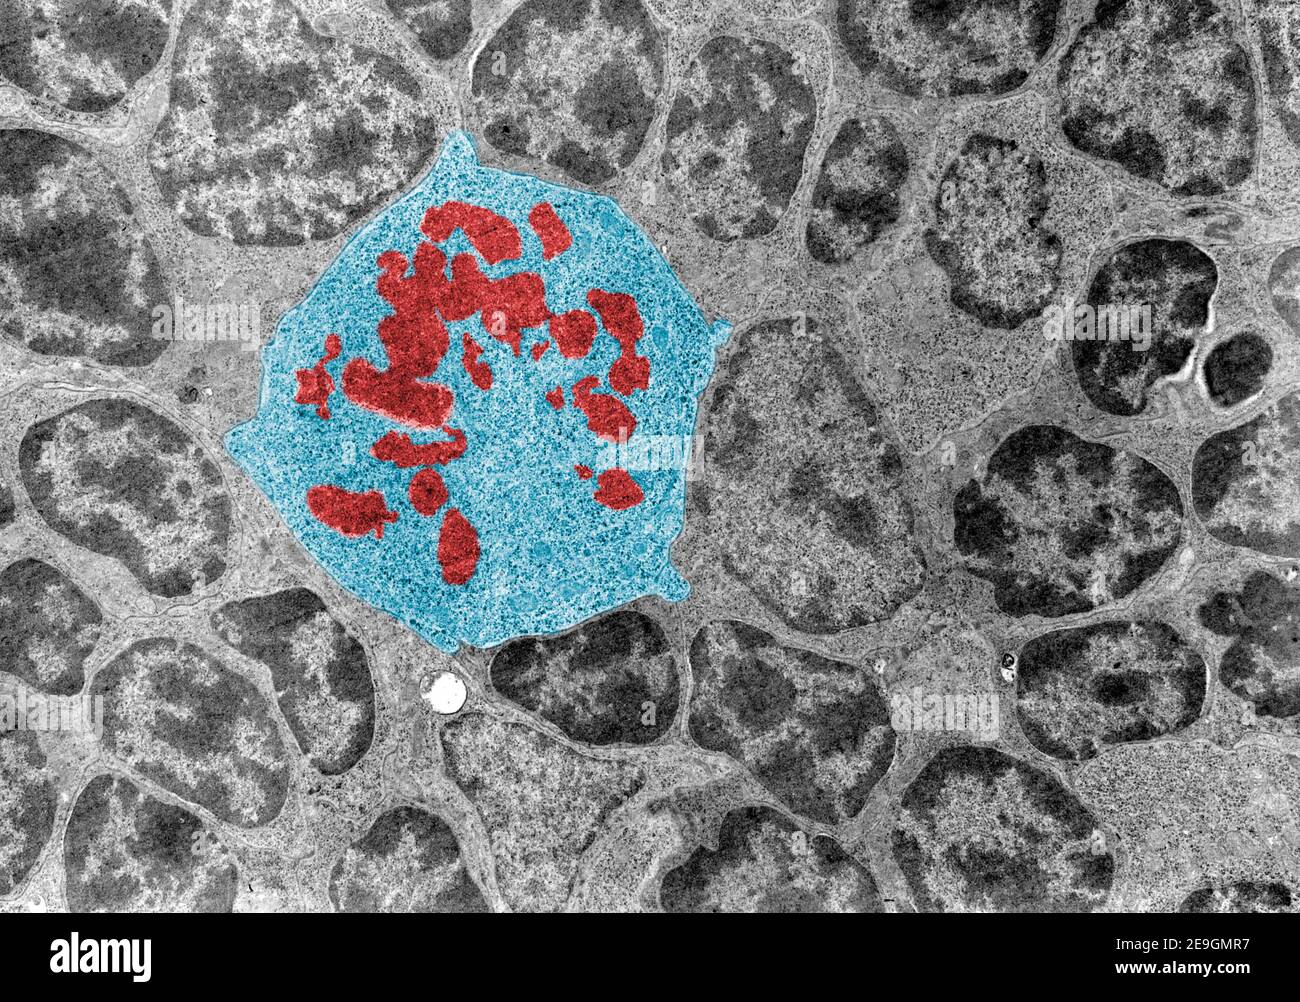 Mikroskope mit Falschfarben-Transmissionselektronenmikroskop (TEM) einer mitotischen Zelle (blau), die von Interphasenzellen umgeben ist. Die Chromosomen (rot) erscheinen a Stockfoto